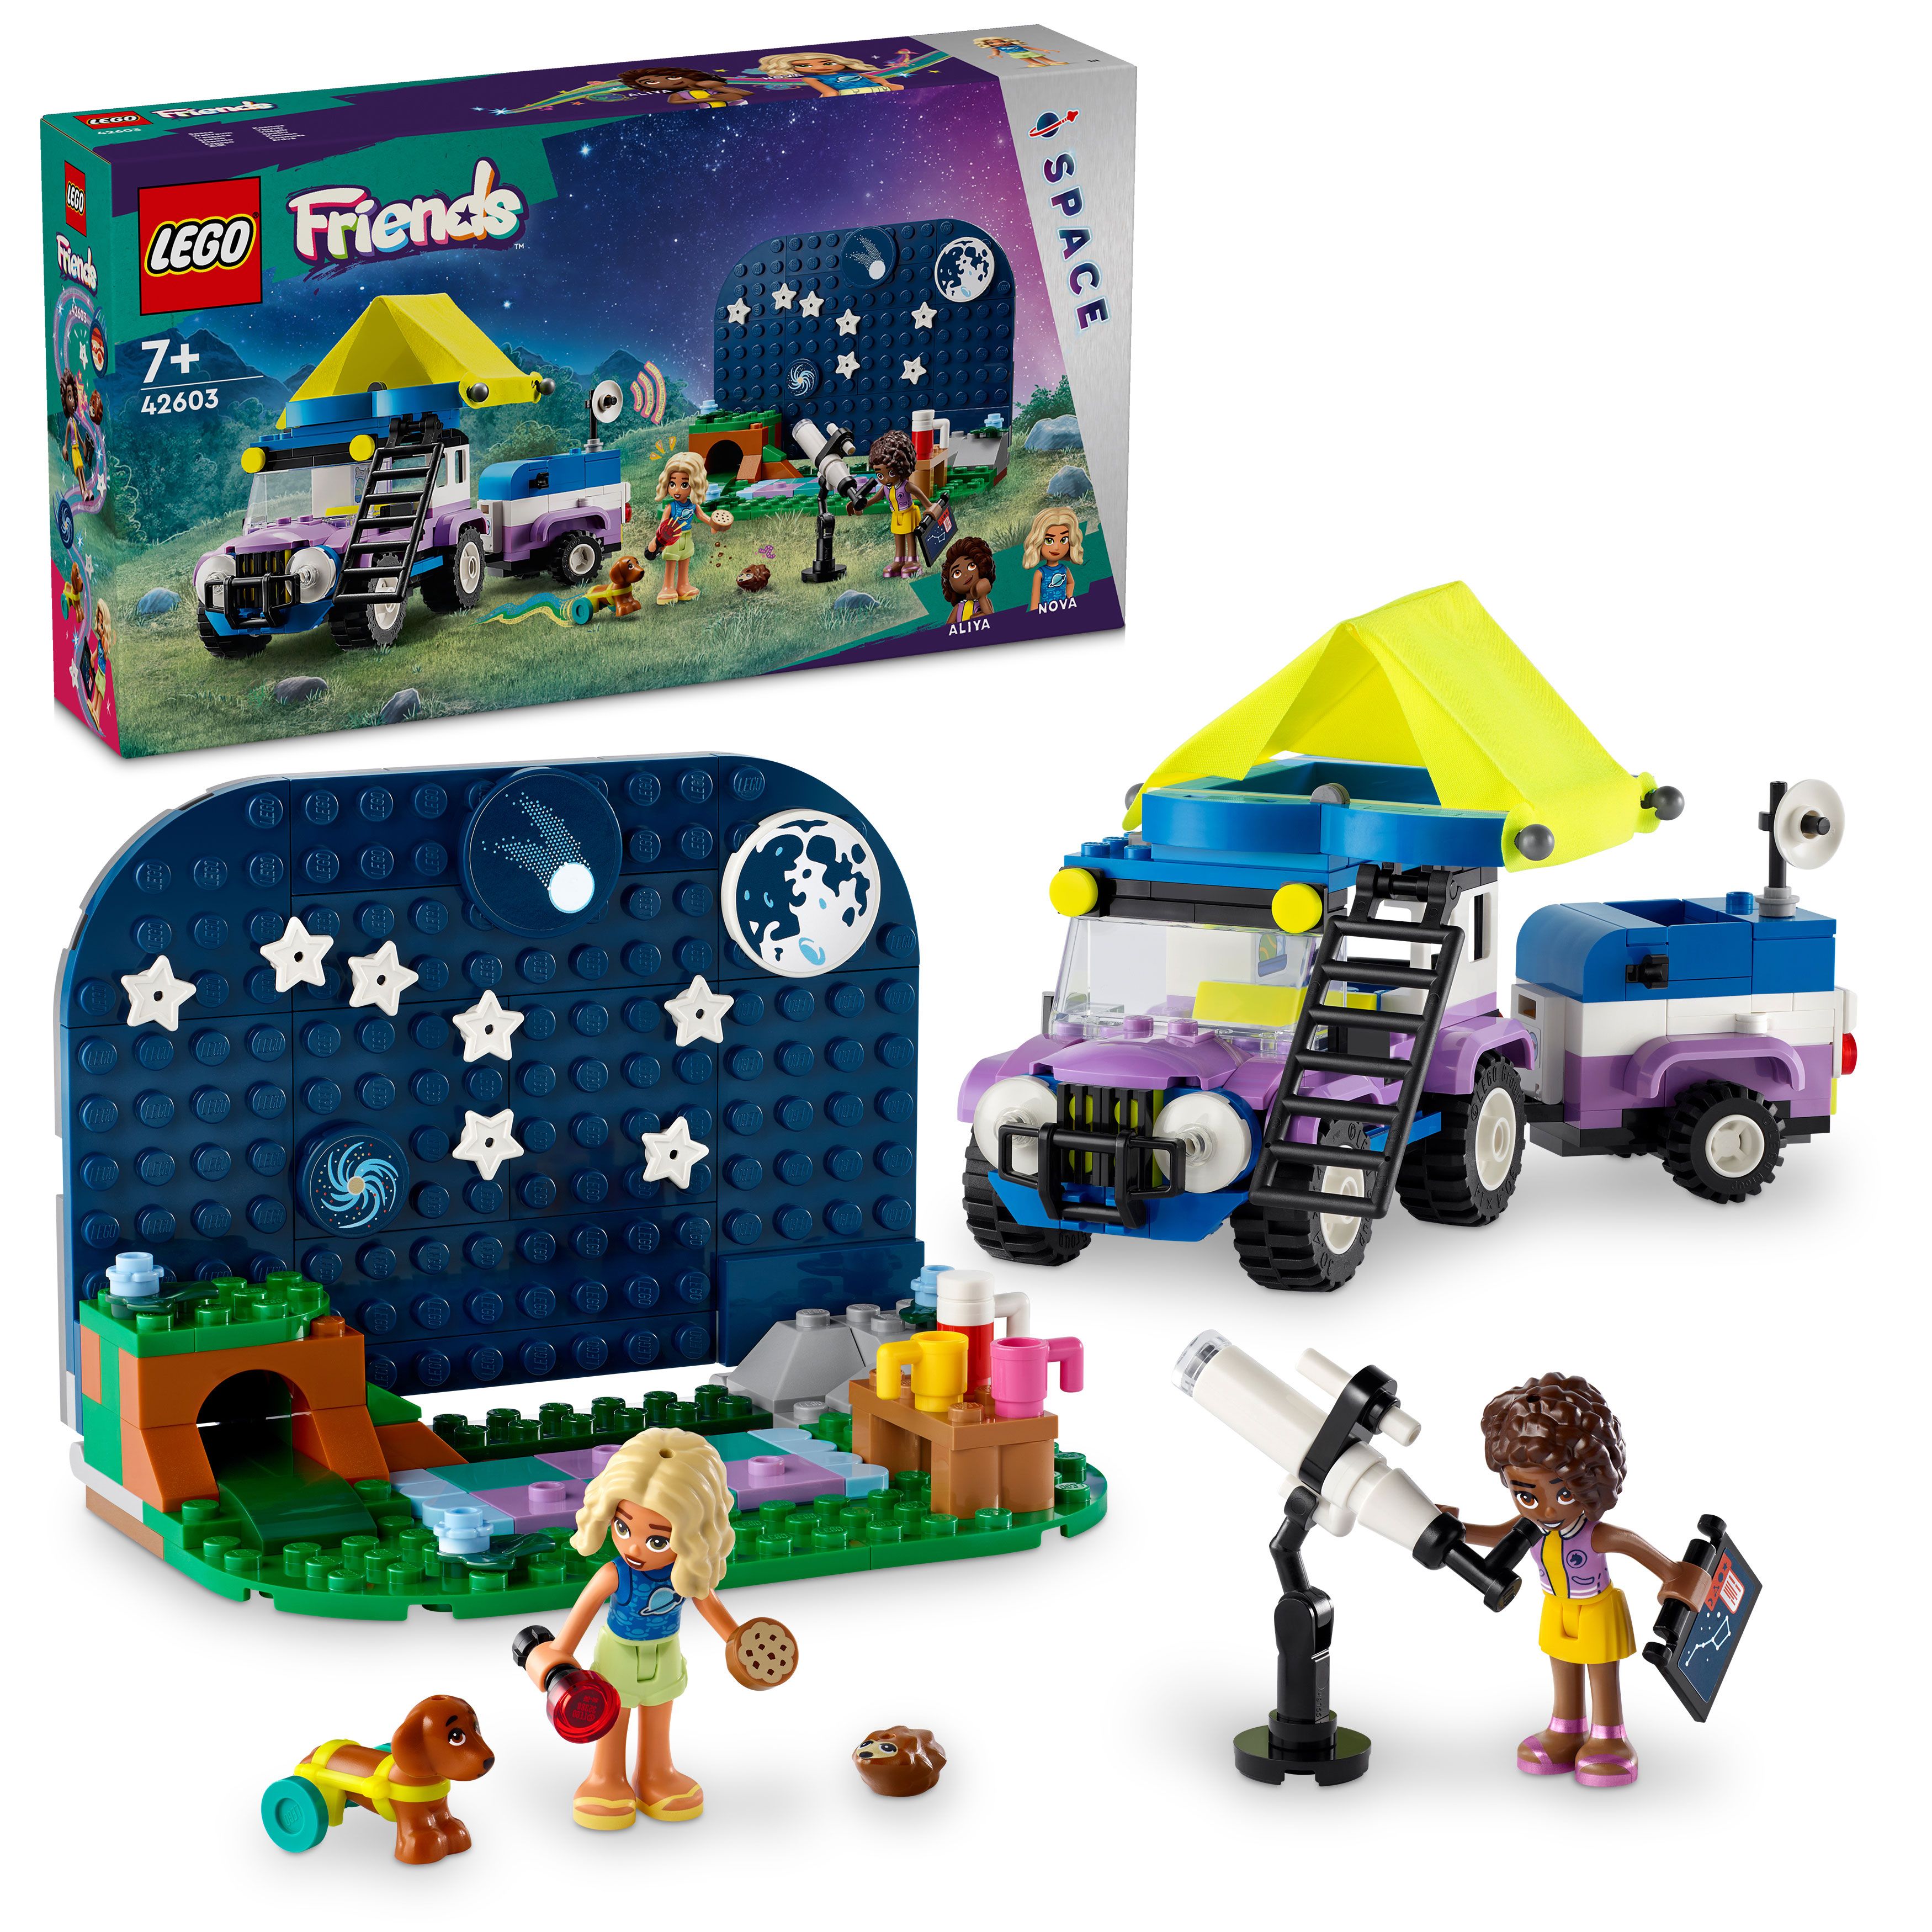 LEGO Friends - Campingbil for stjernetittere (42603)